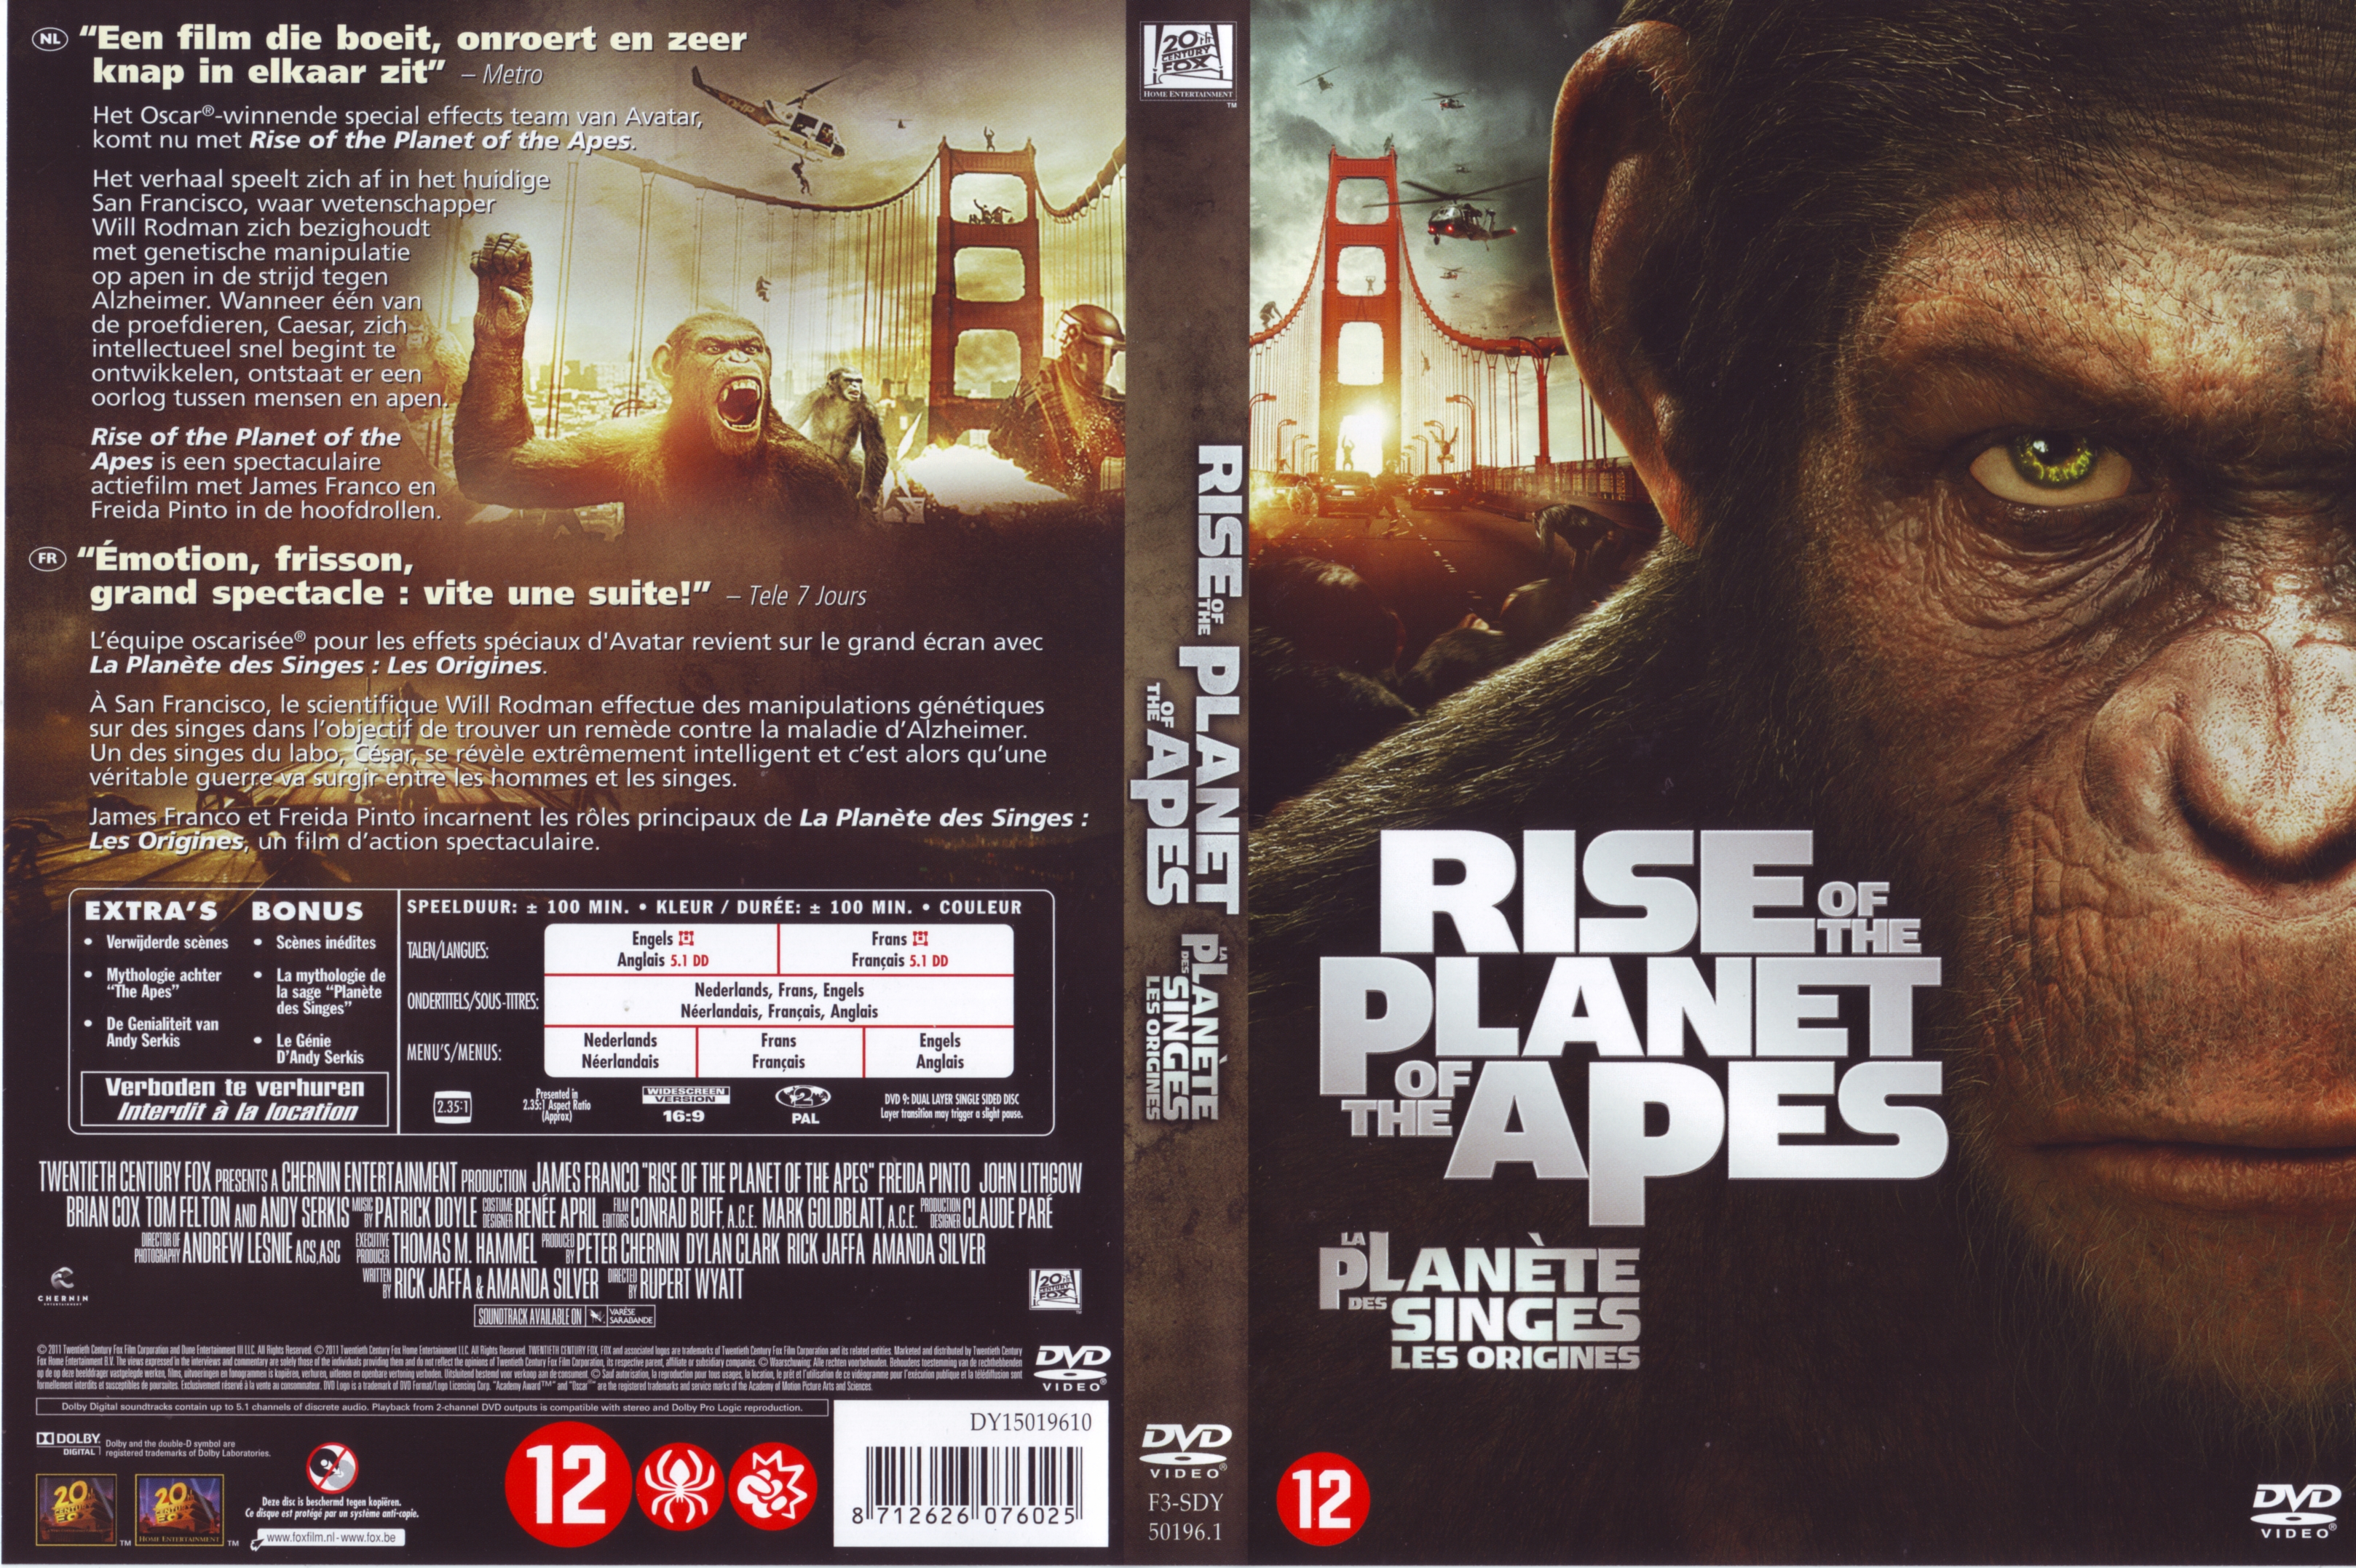 Jaquette DVD La Plante des singes : les origines v2